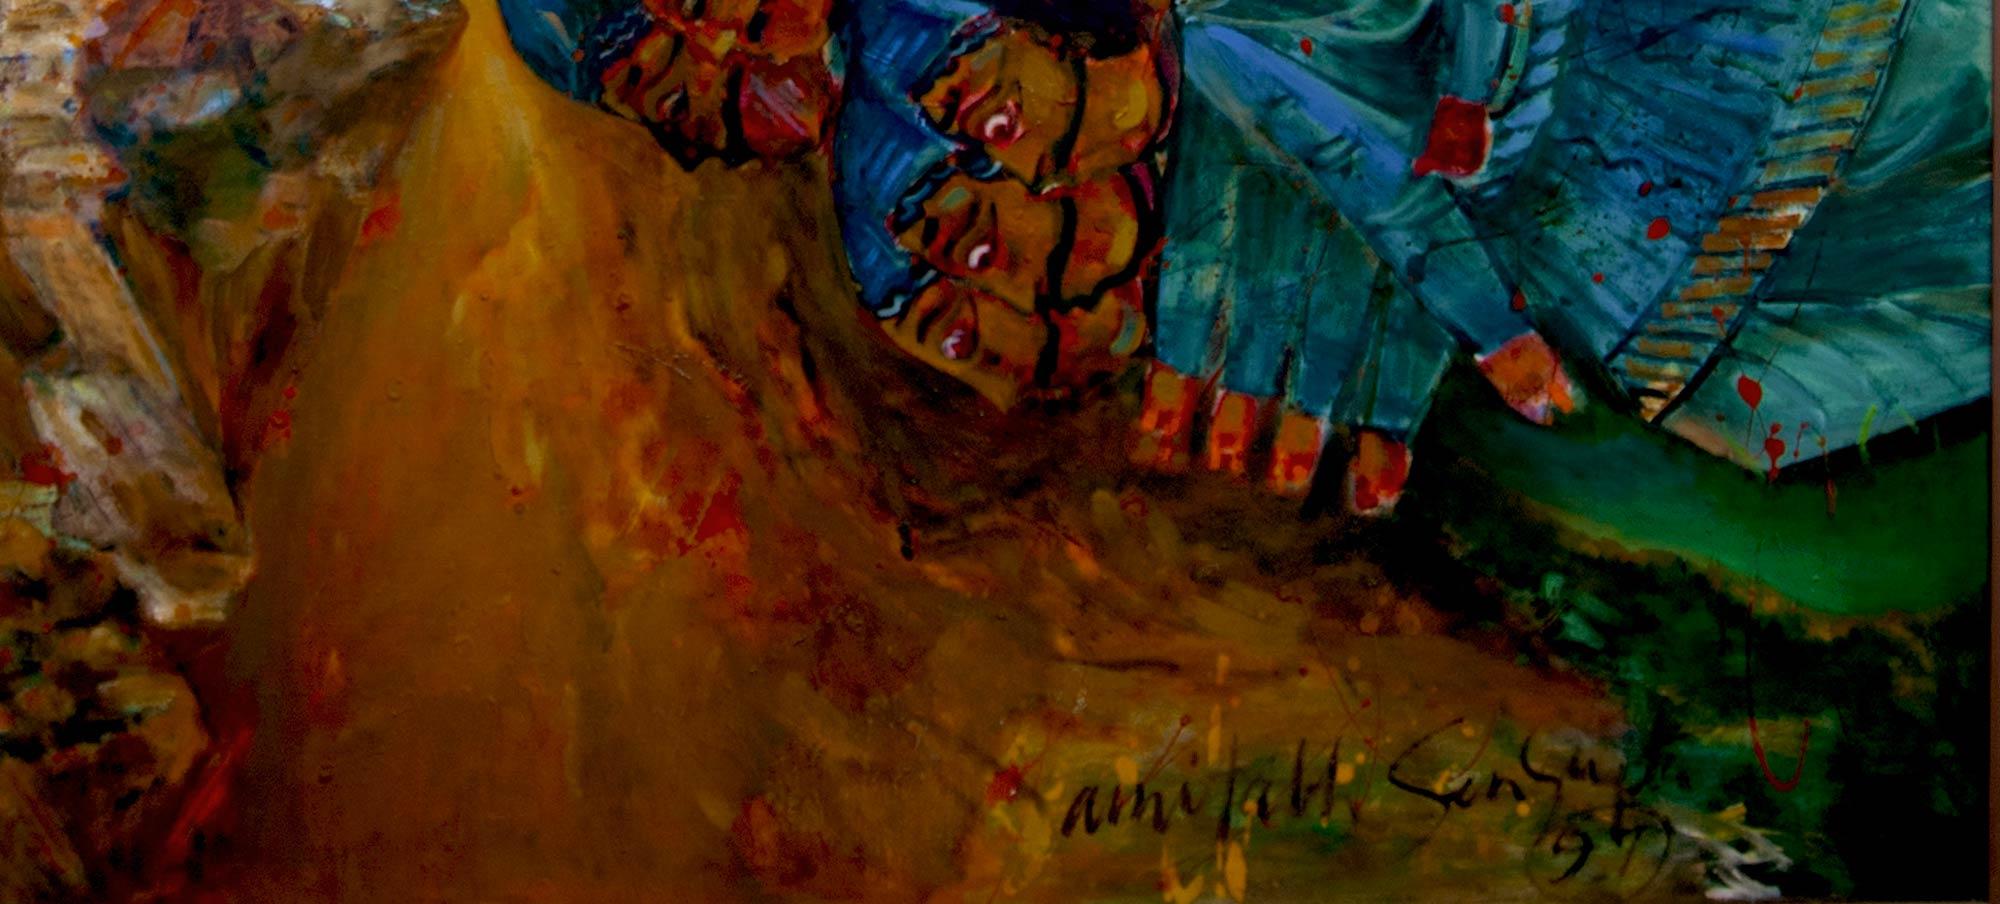 Amitabh Sengupta - Fall of Ravana - 48 x 64.8 inches (taille non encadrée)
Huile sur toile 
** Cette œuvre sera expédiée en rouleau pour économiser les frais d'expédition.

Série Mythscape : Cette série a vu le jour à la fin des années 90 lorsque